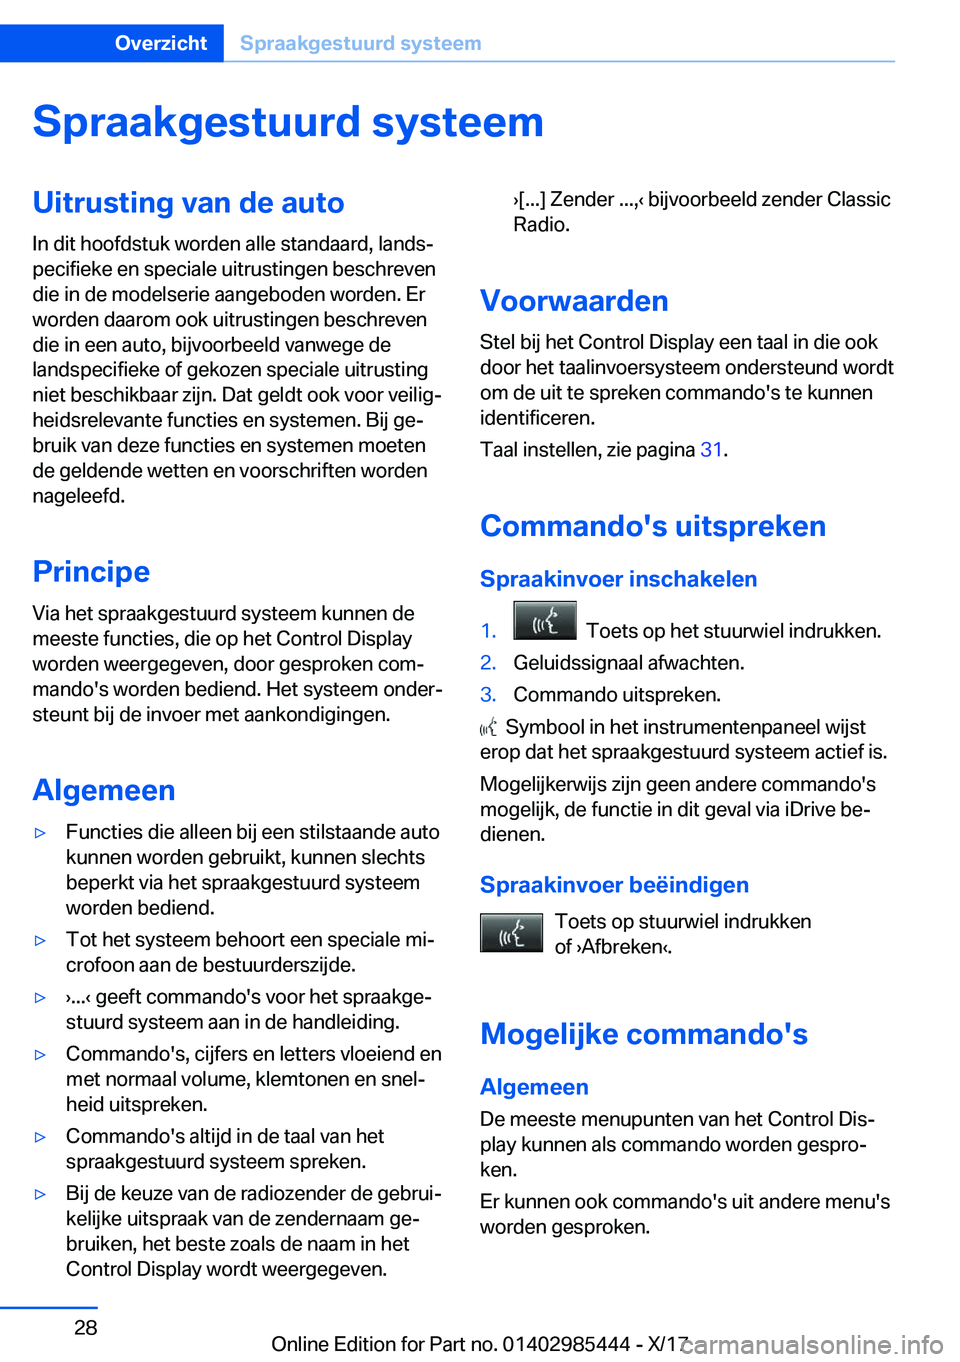 BMW X1 2018  Instructieboekjes (in Dutch) �S�p�r�a�a�k�g�e�s�t�u�u�r�d��s�y�s�t�e�e�m�U�i�t�r�u�s�t�i�n�g��v�a�n��d�e��a�u�t�o�I�n� �d�i�t� �h�o�o�f�d�s�t�u�k� �w�o�r�d�e�n� �a�l�l�e� �s�t�a�n�d�a�a�r�d�,� �l�a�n�d�sj
�p�e�c�i�f�i�e�k�e�